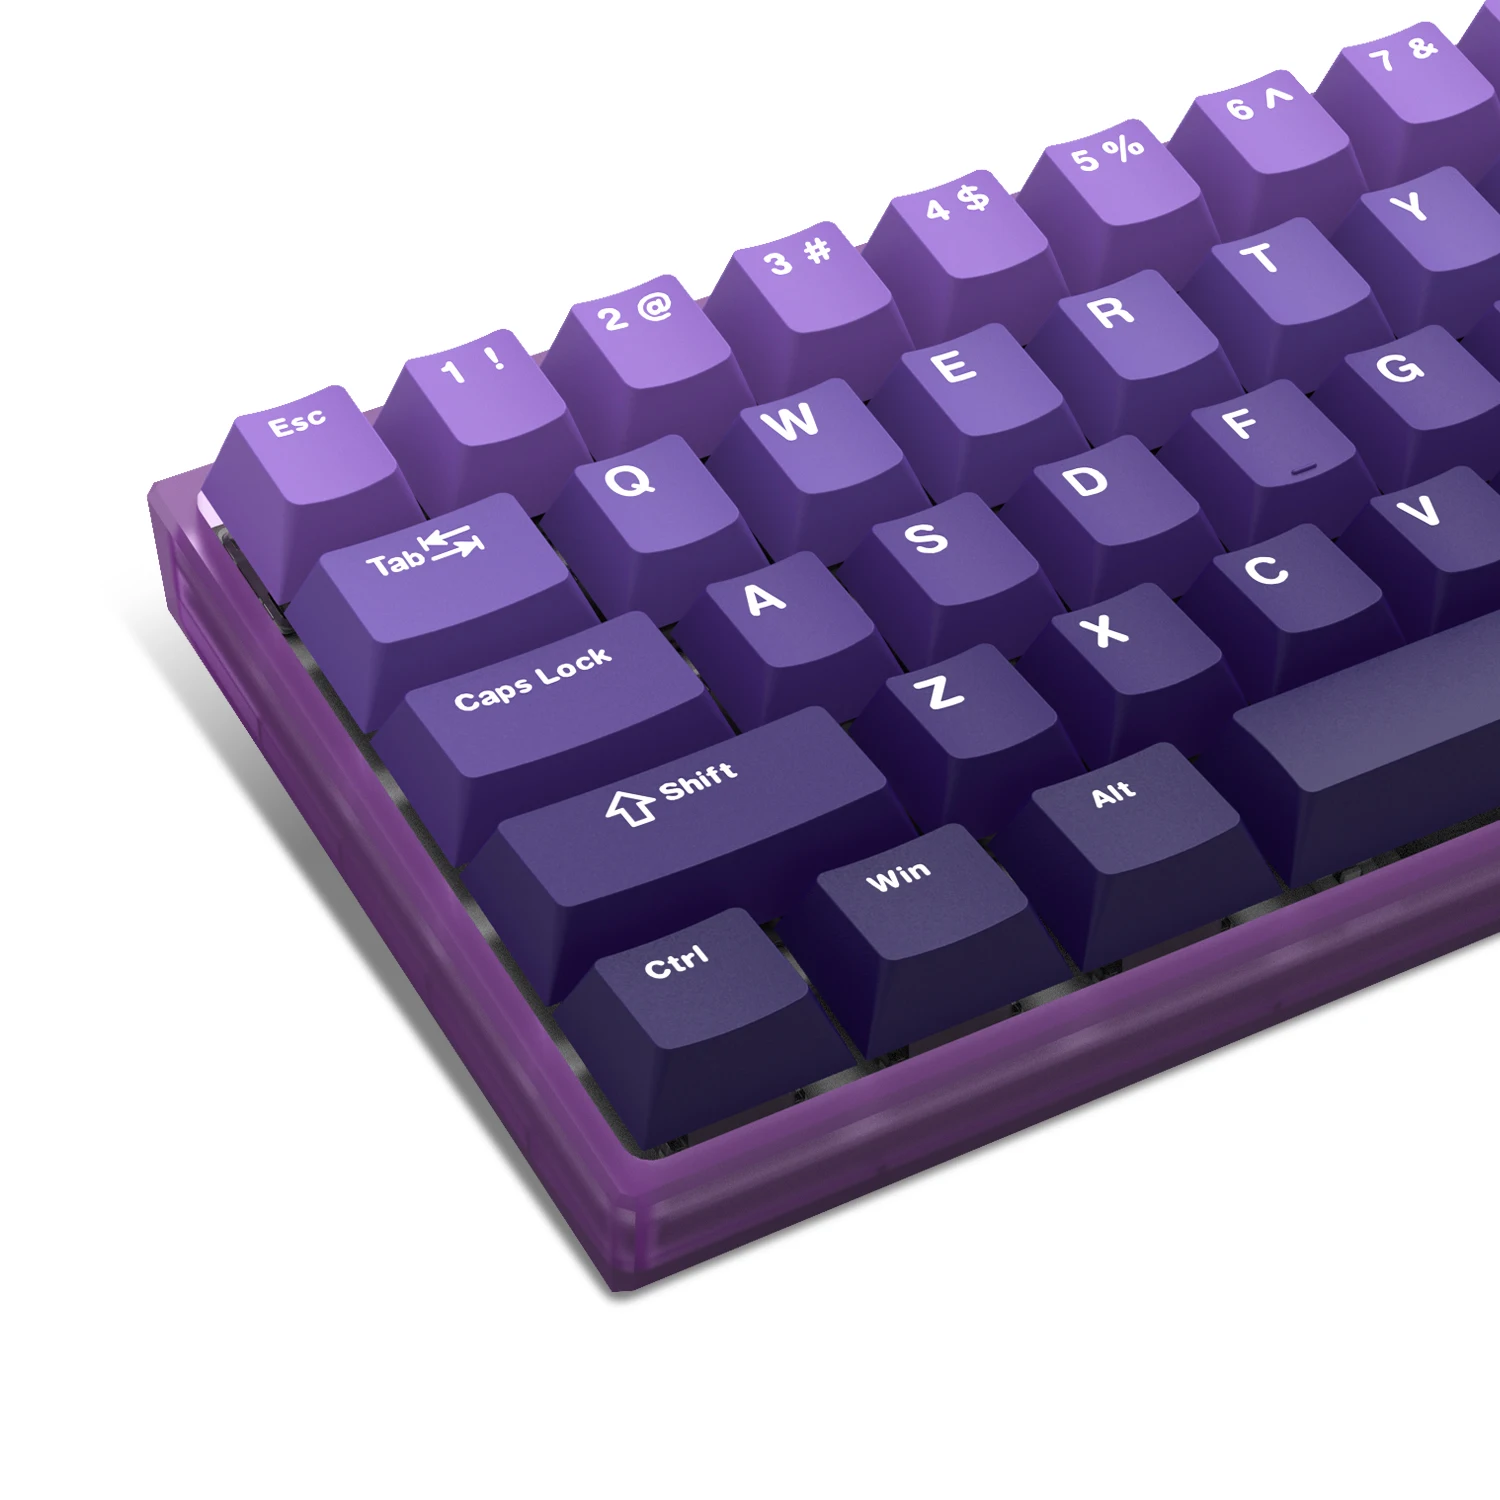 

Механическая клавиатура для геймеров Cherry MX GK61 Anne Pro 2 Gateron, 132 клавиши, градиентные фиолетовые клавиши PBT